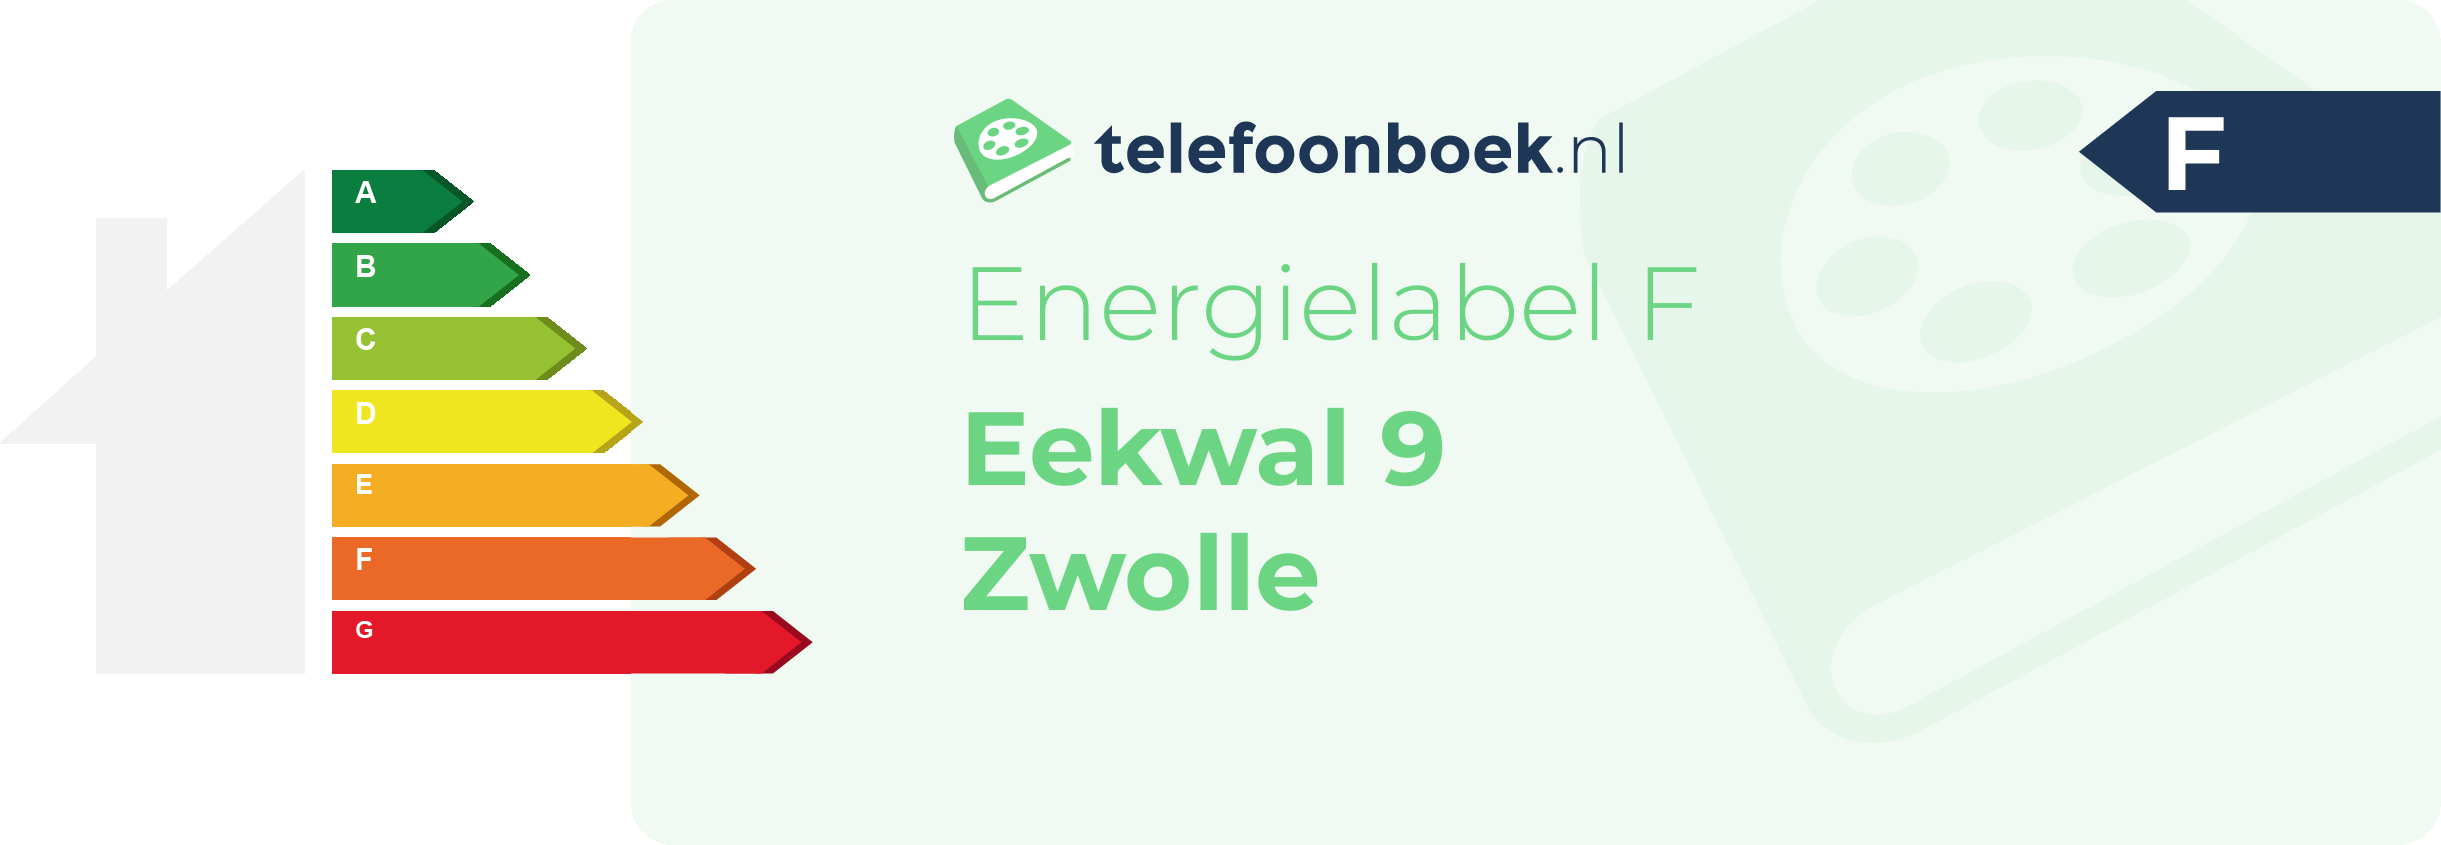 Energielabel Eekwal 9 Zwolle